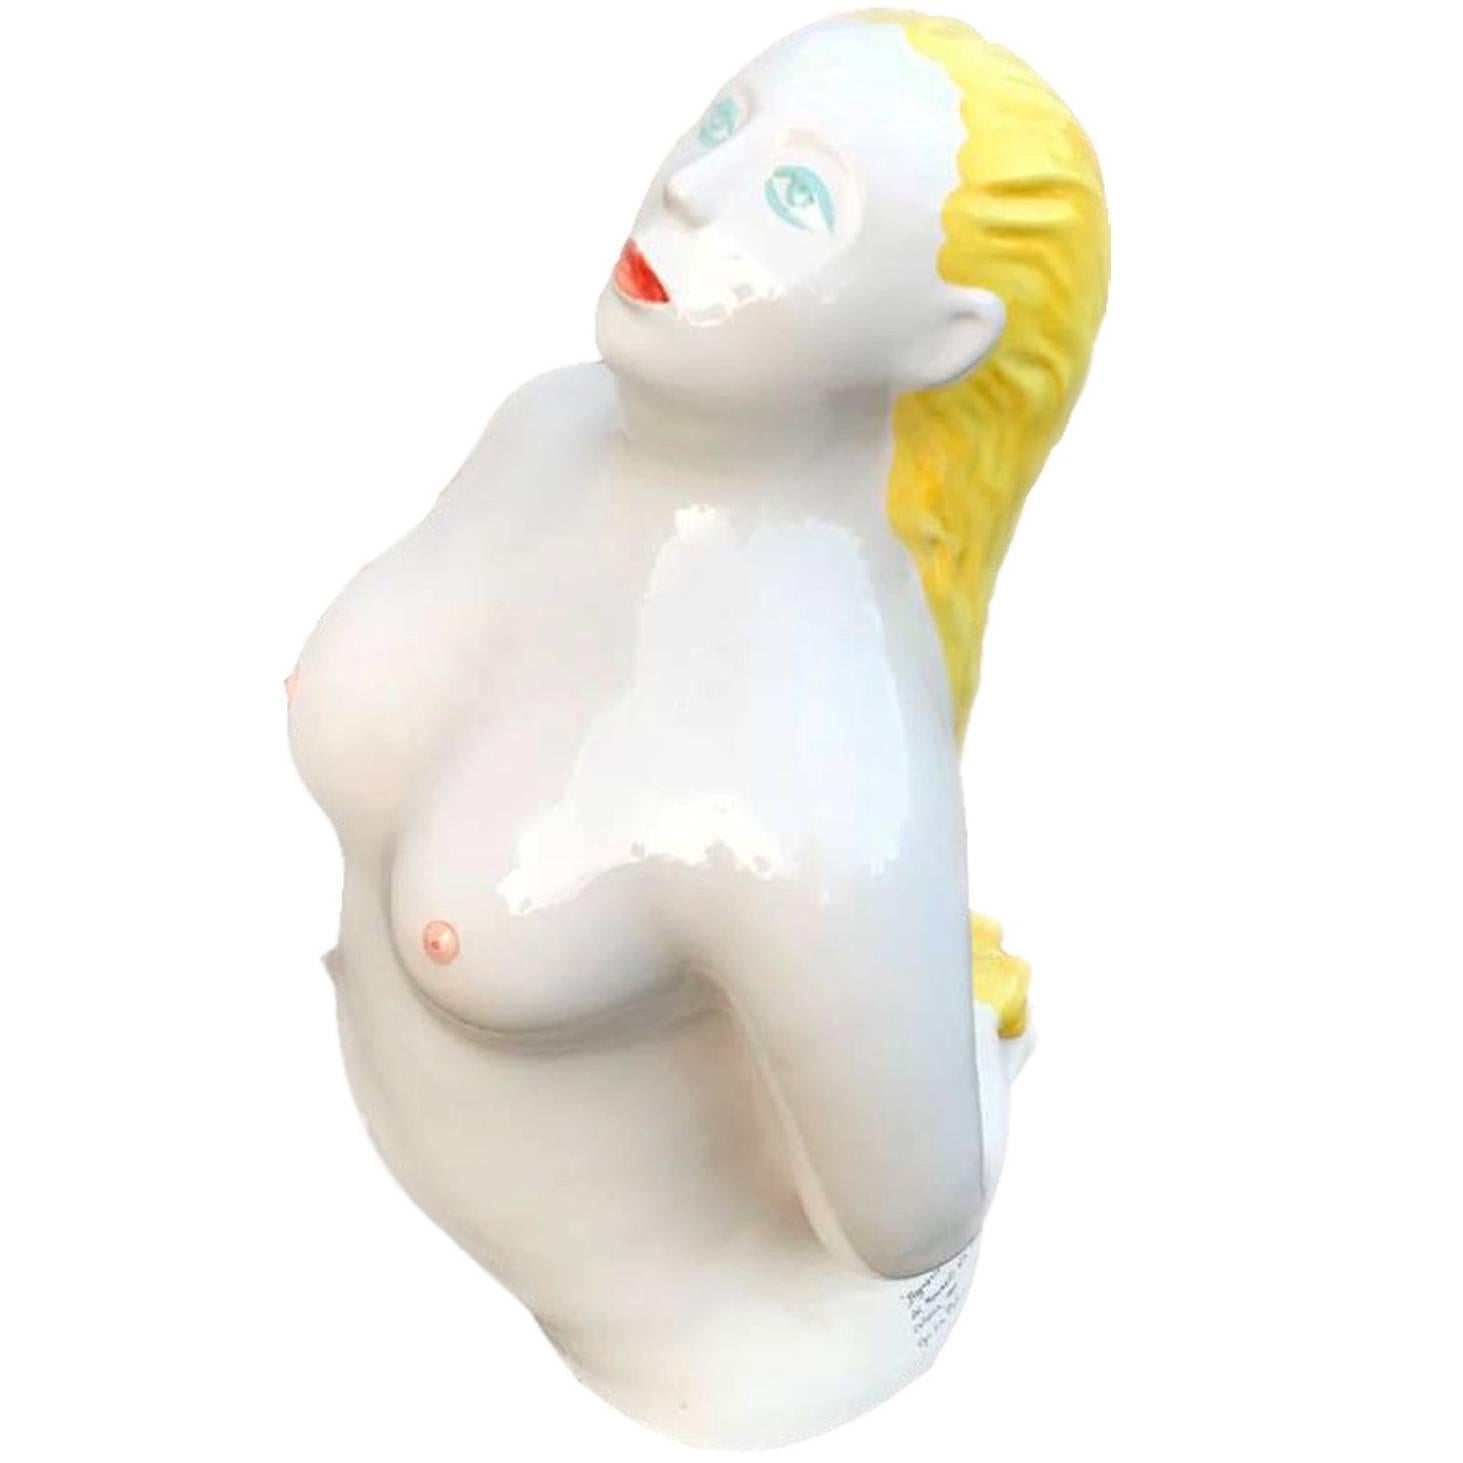 Ugo La Pietra Keramik-Skulptur Modell Bagnante Superego Editions, Italien